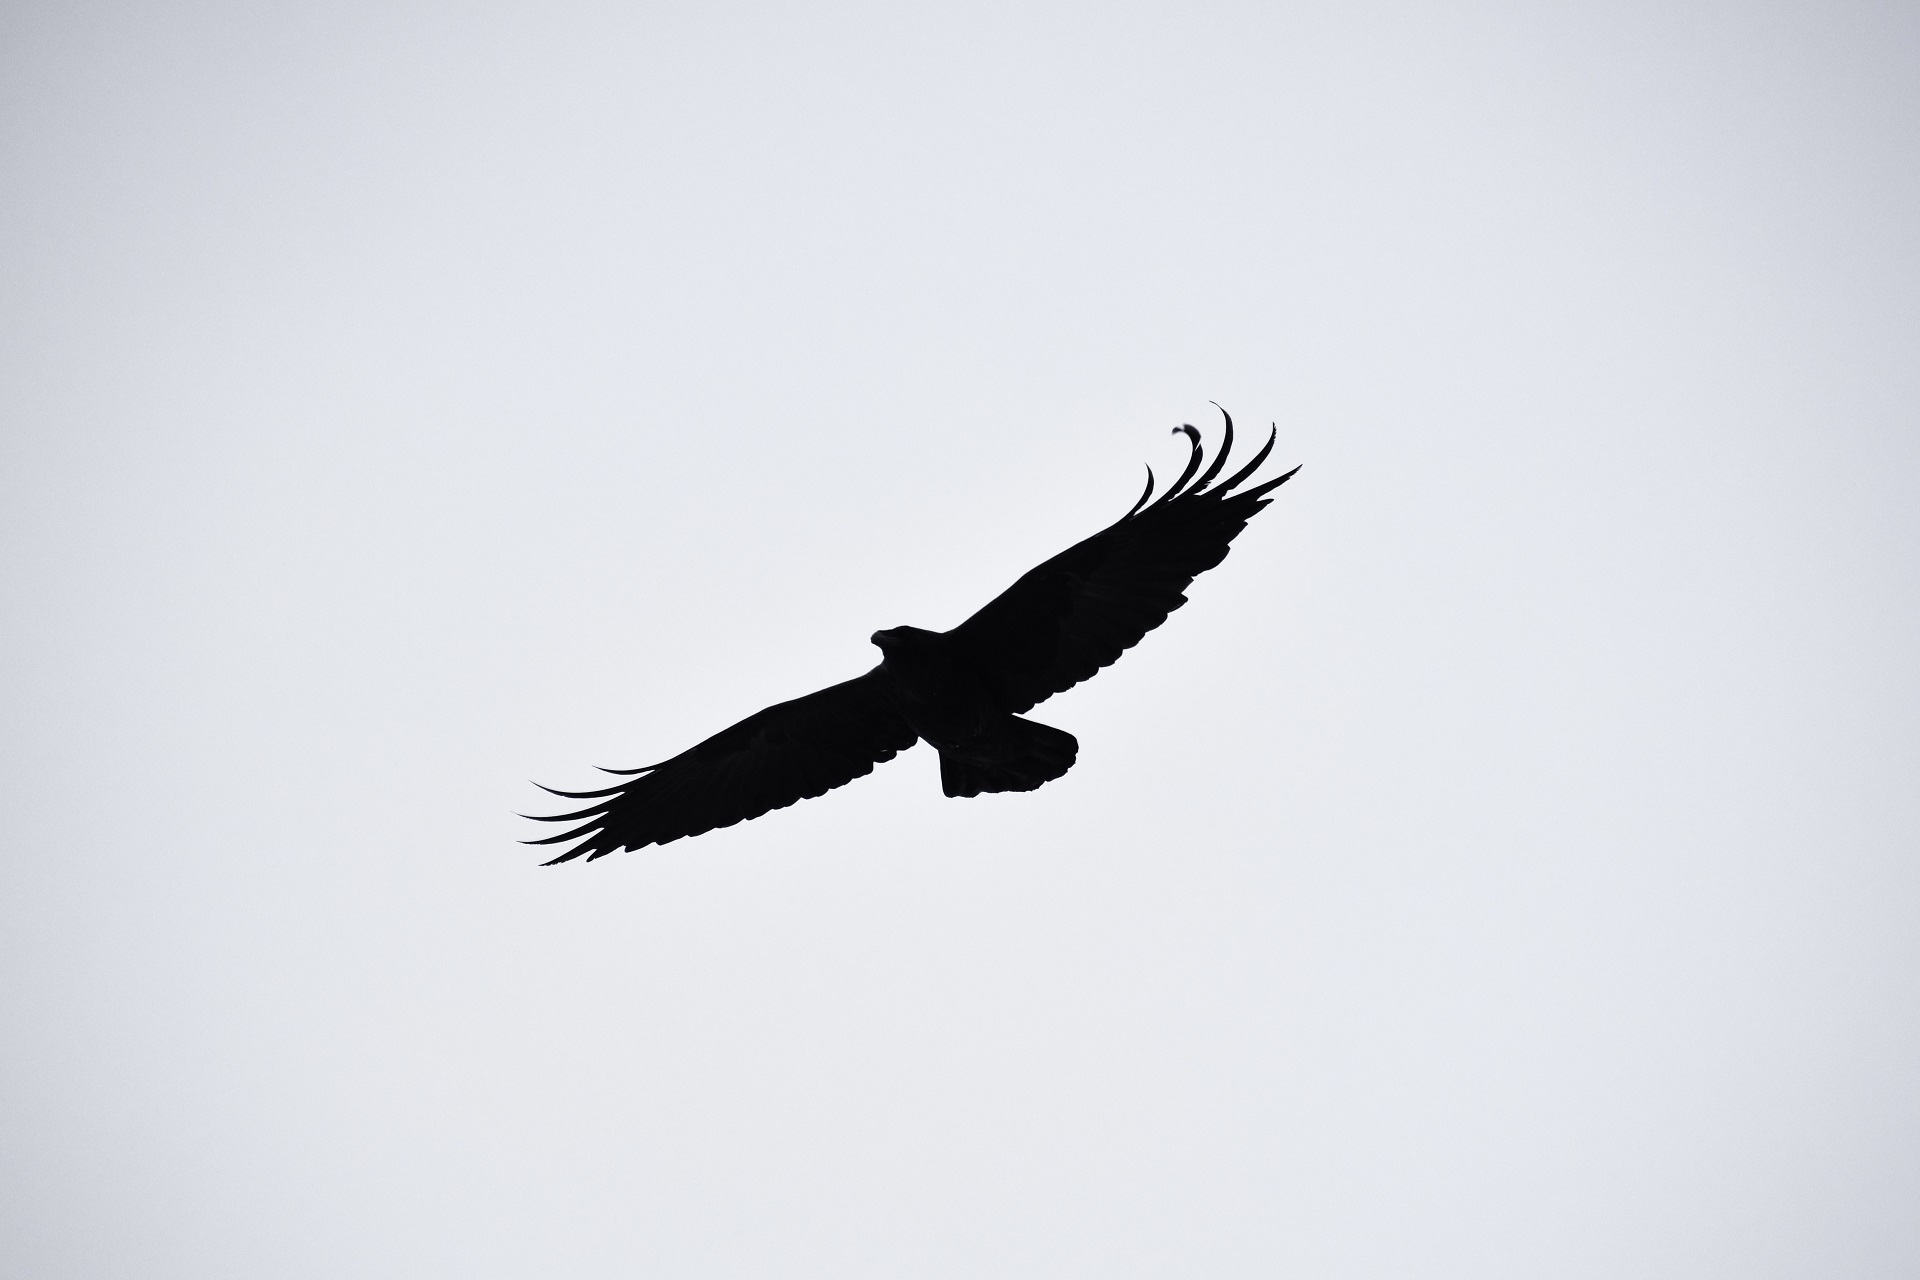 Eagle in sky